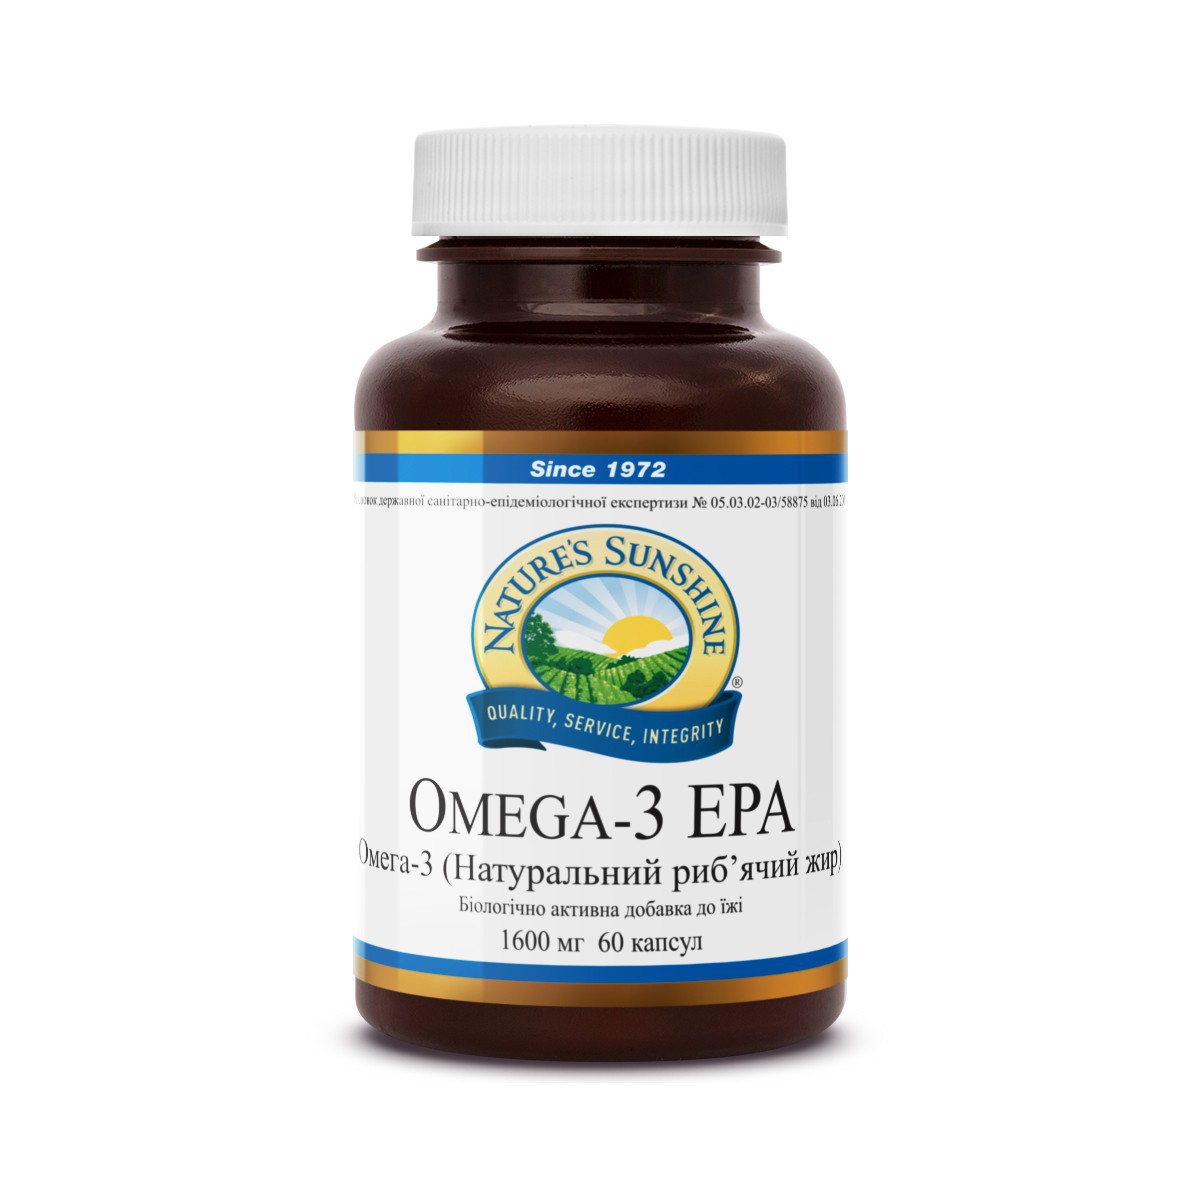 Omega-3 EPA - Омега-3 (Полиненасыщенные жирные кислоты) - БАД Nature's Sunshine Products (NSP)